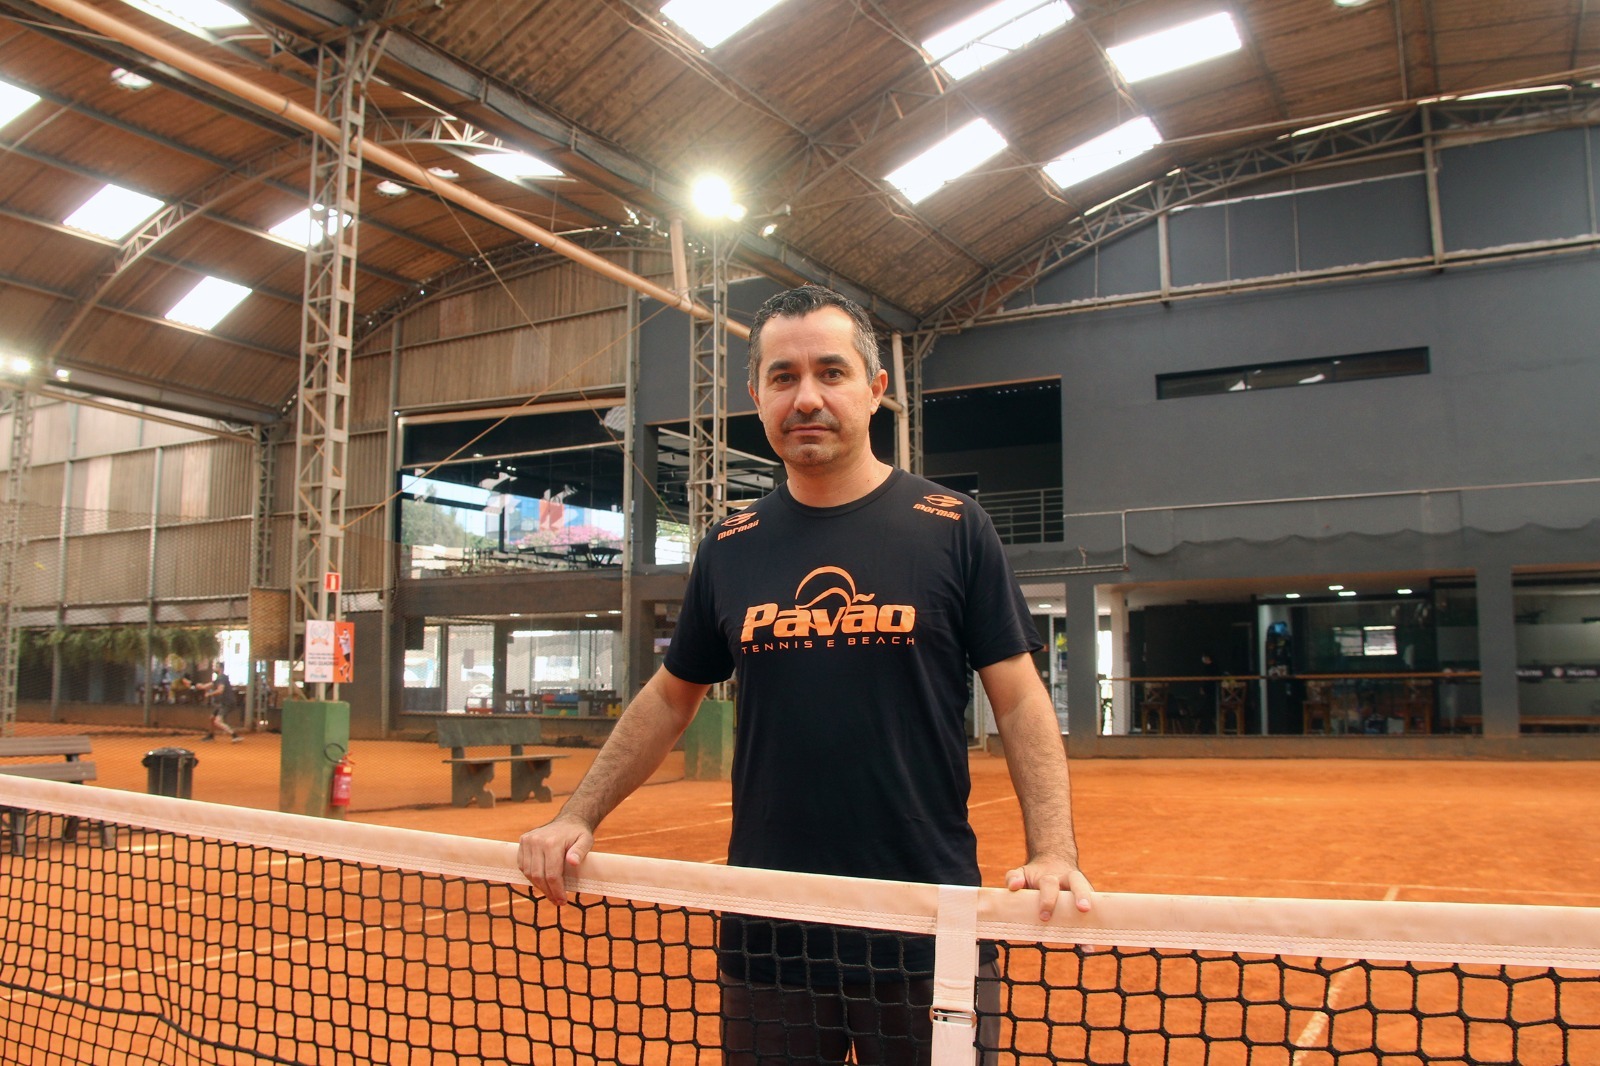  Fernando Meligeni comanda clínica para tenistas em evento da Pavão Tennis em Santo André